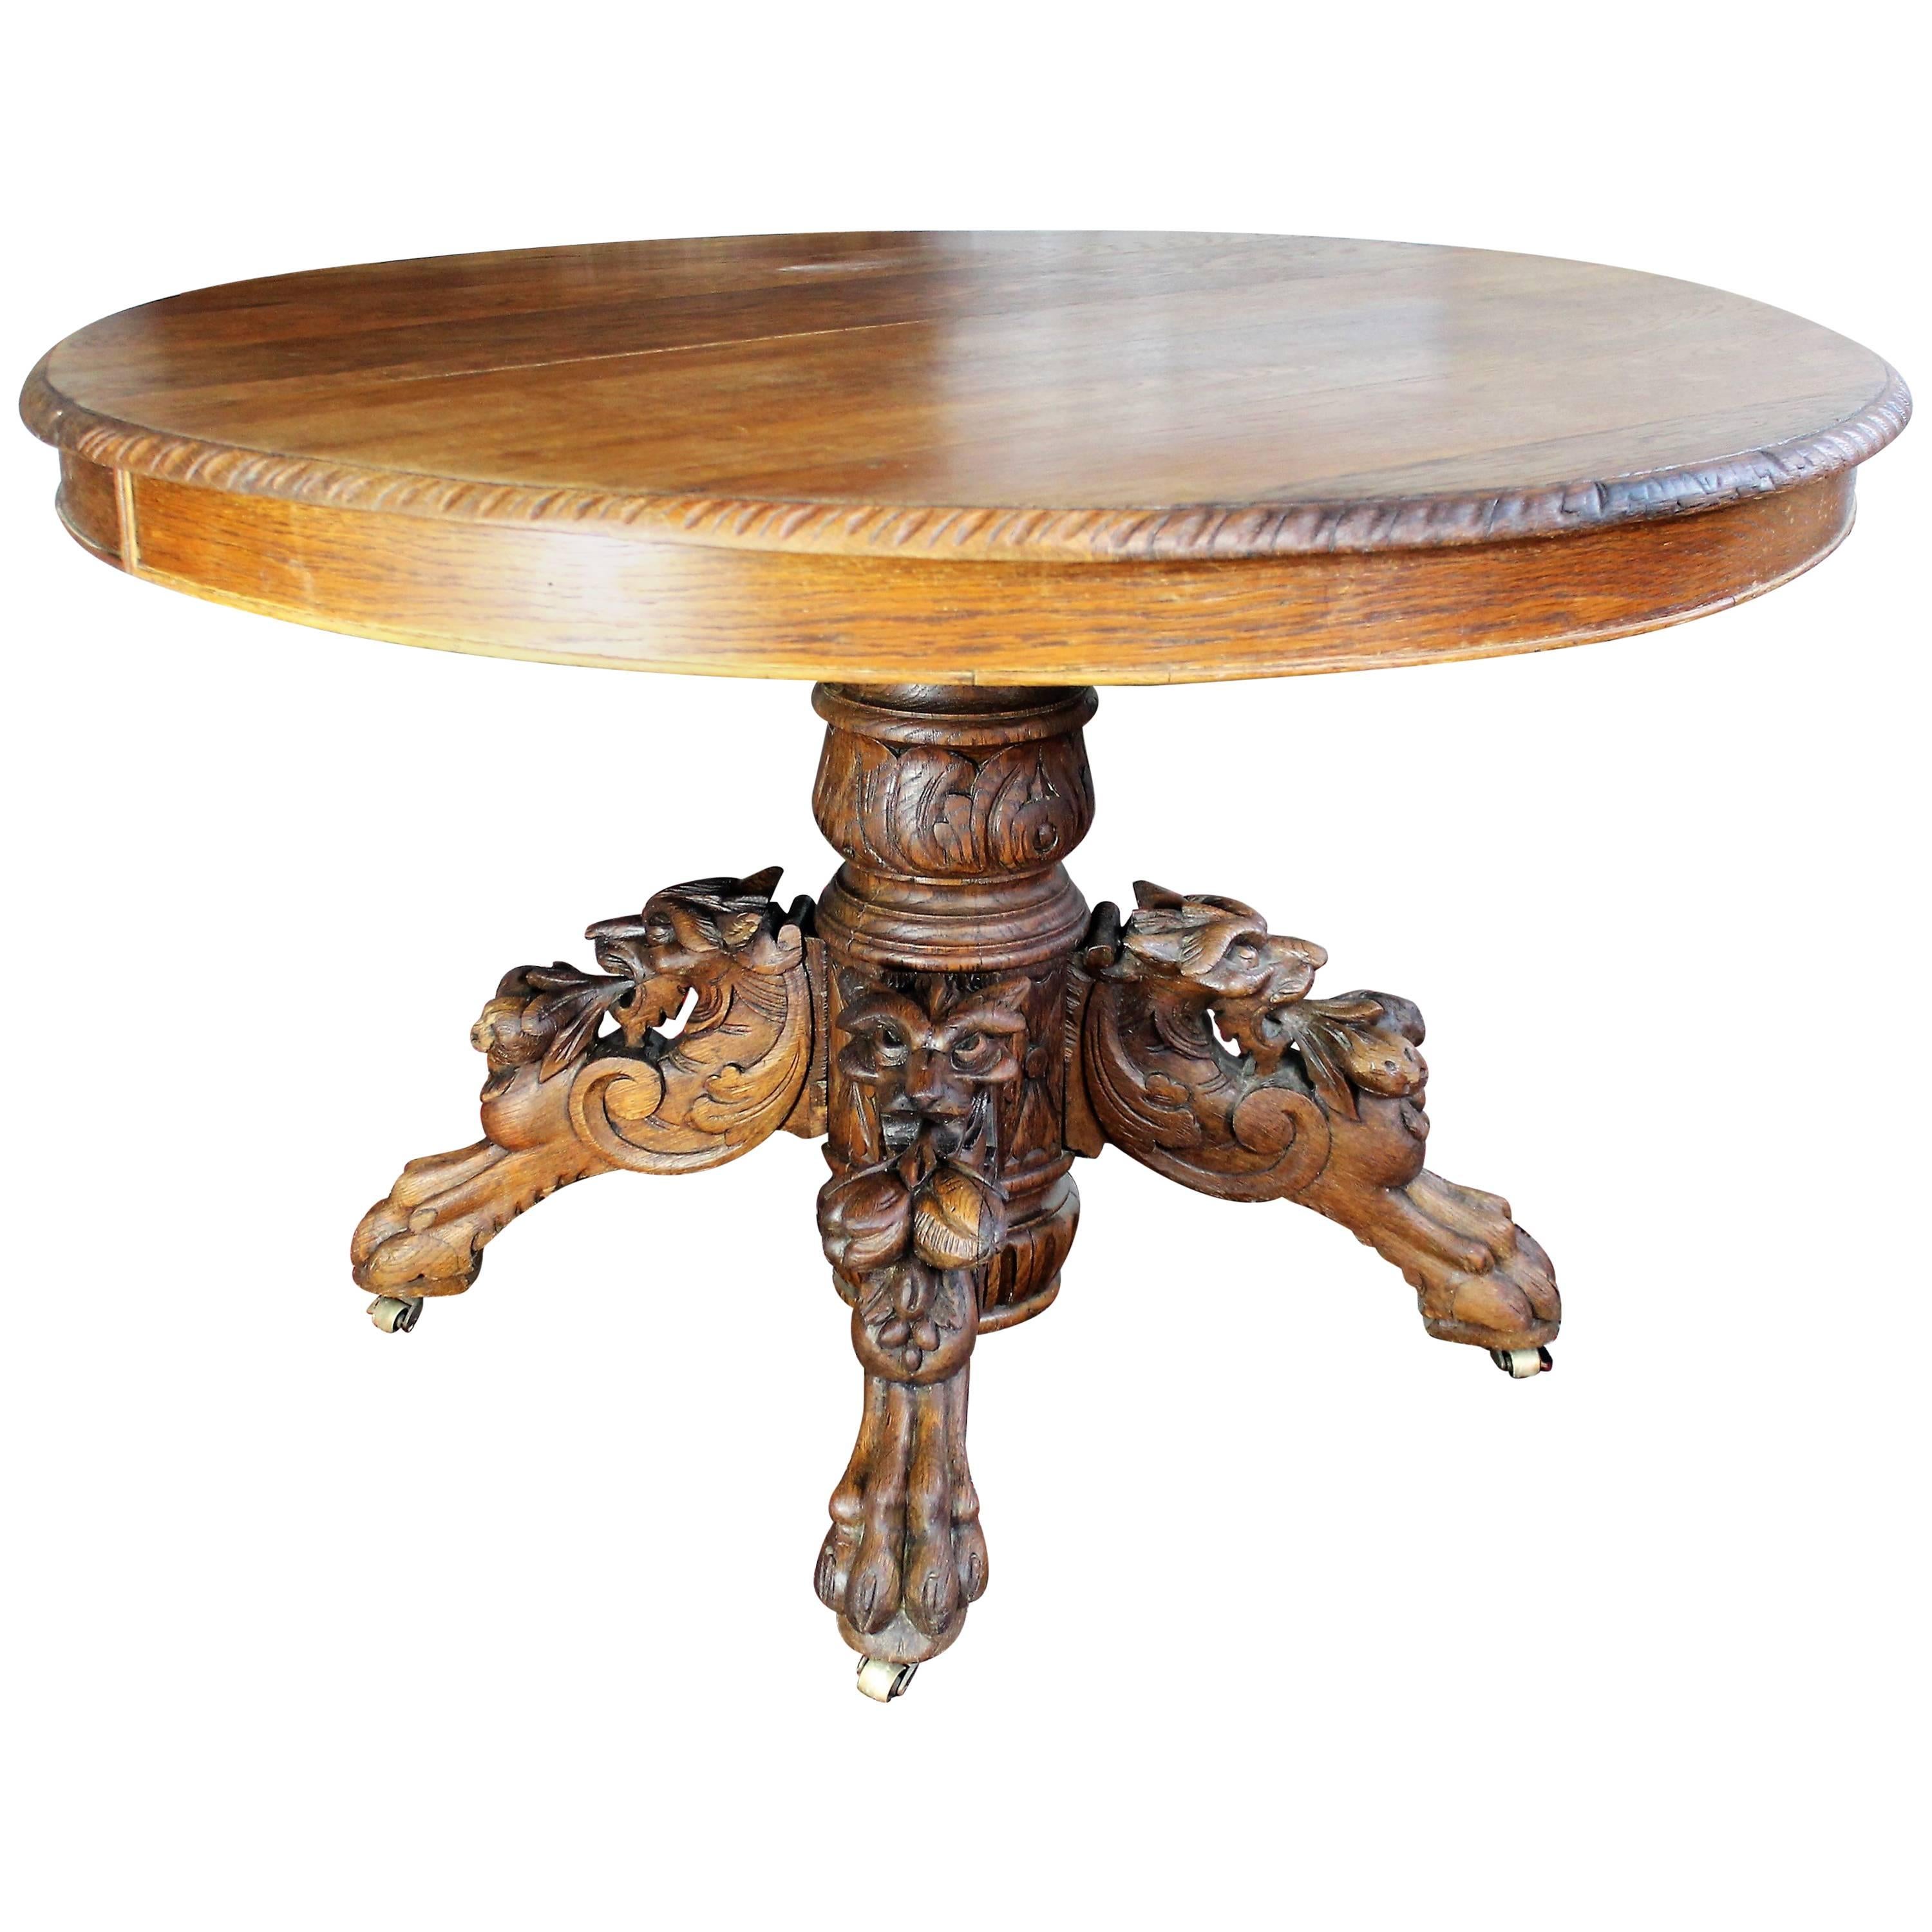 Renaissance Revival Table with Lion's Head